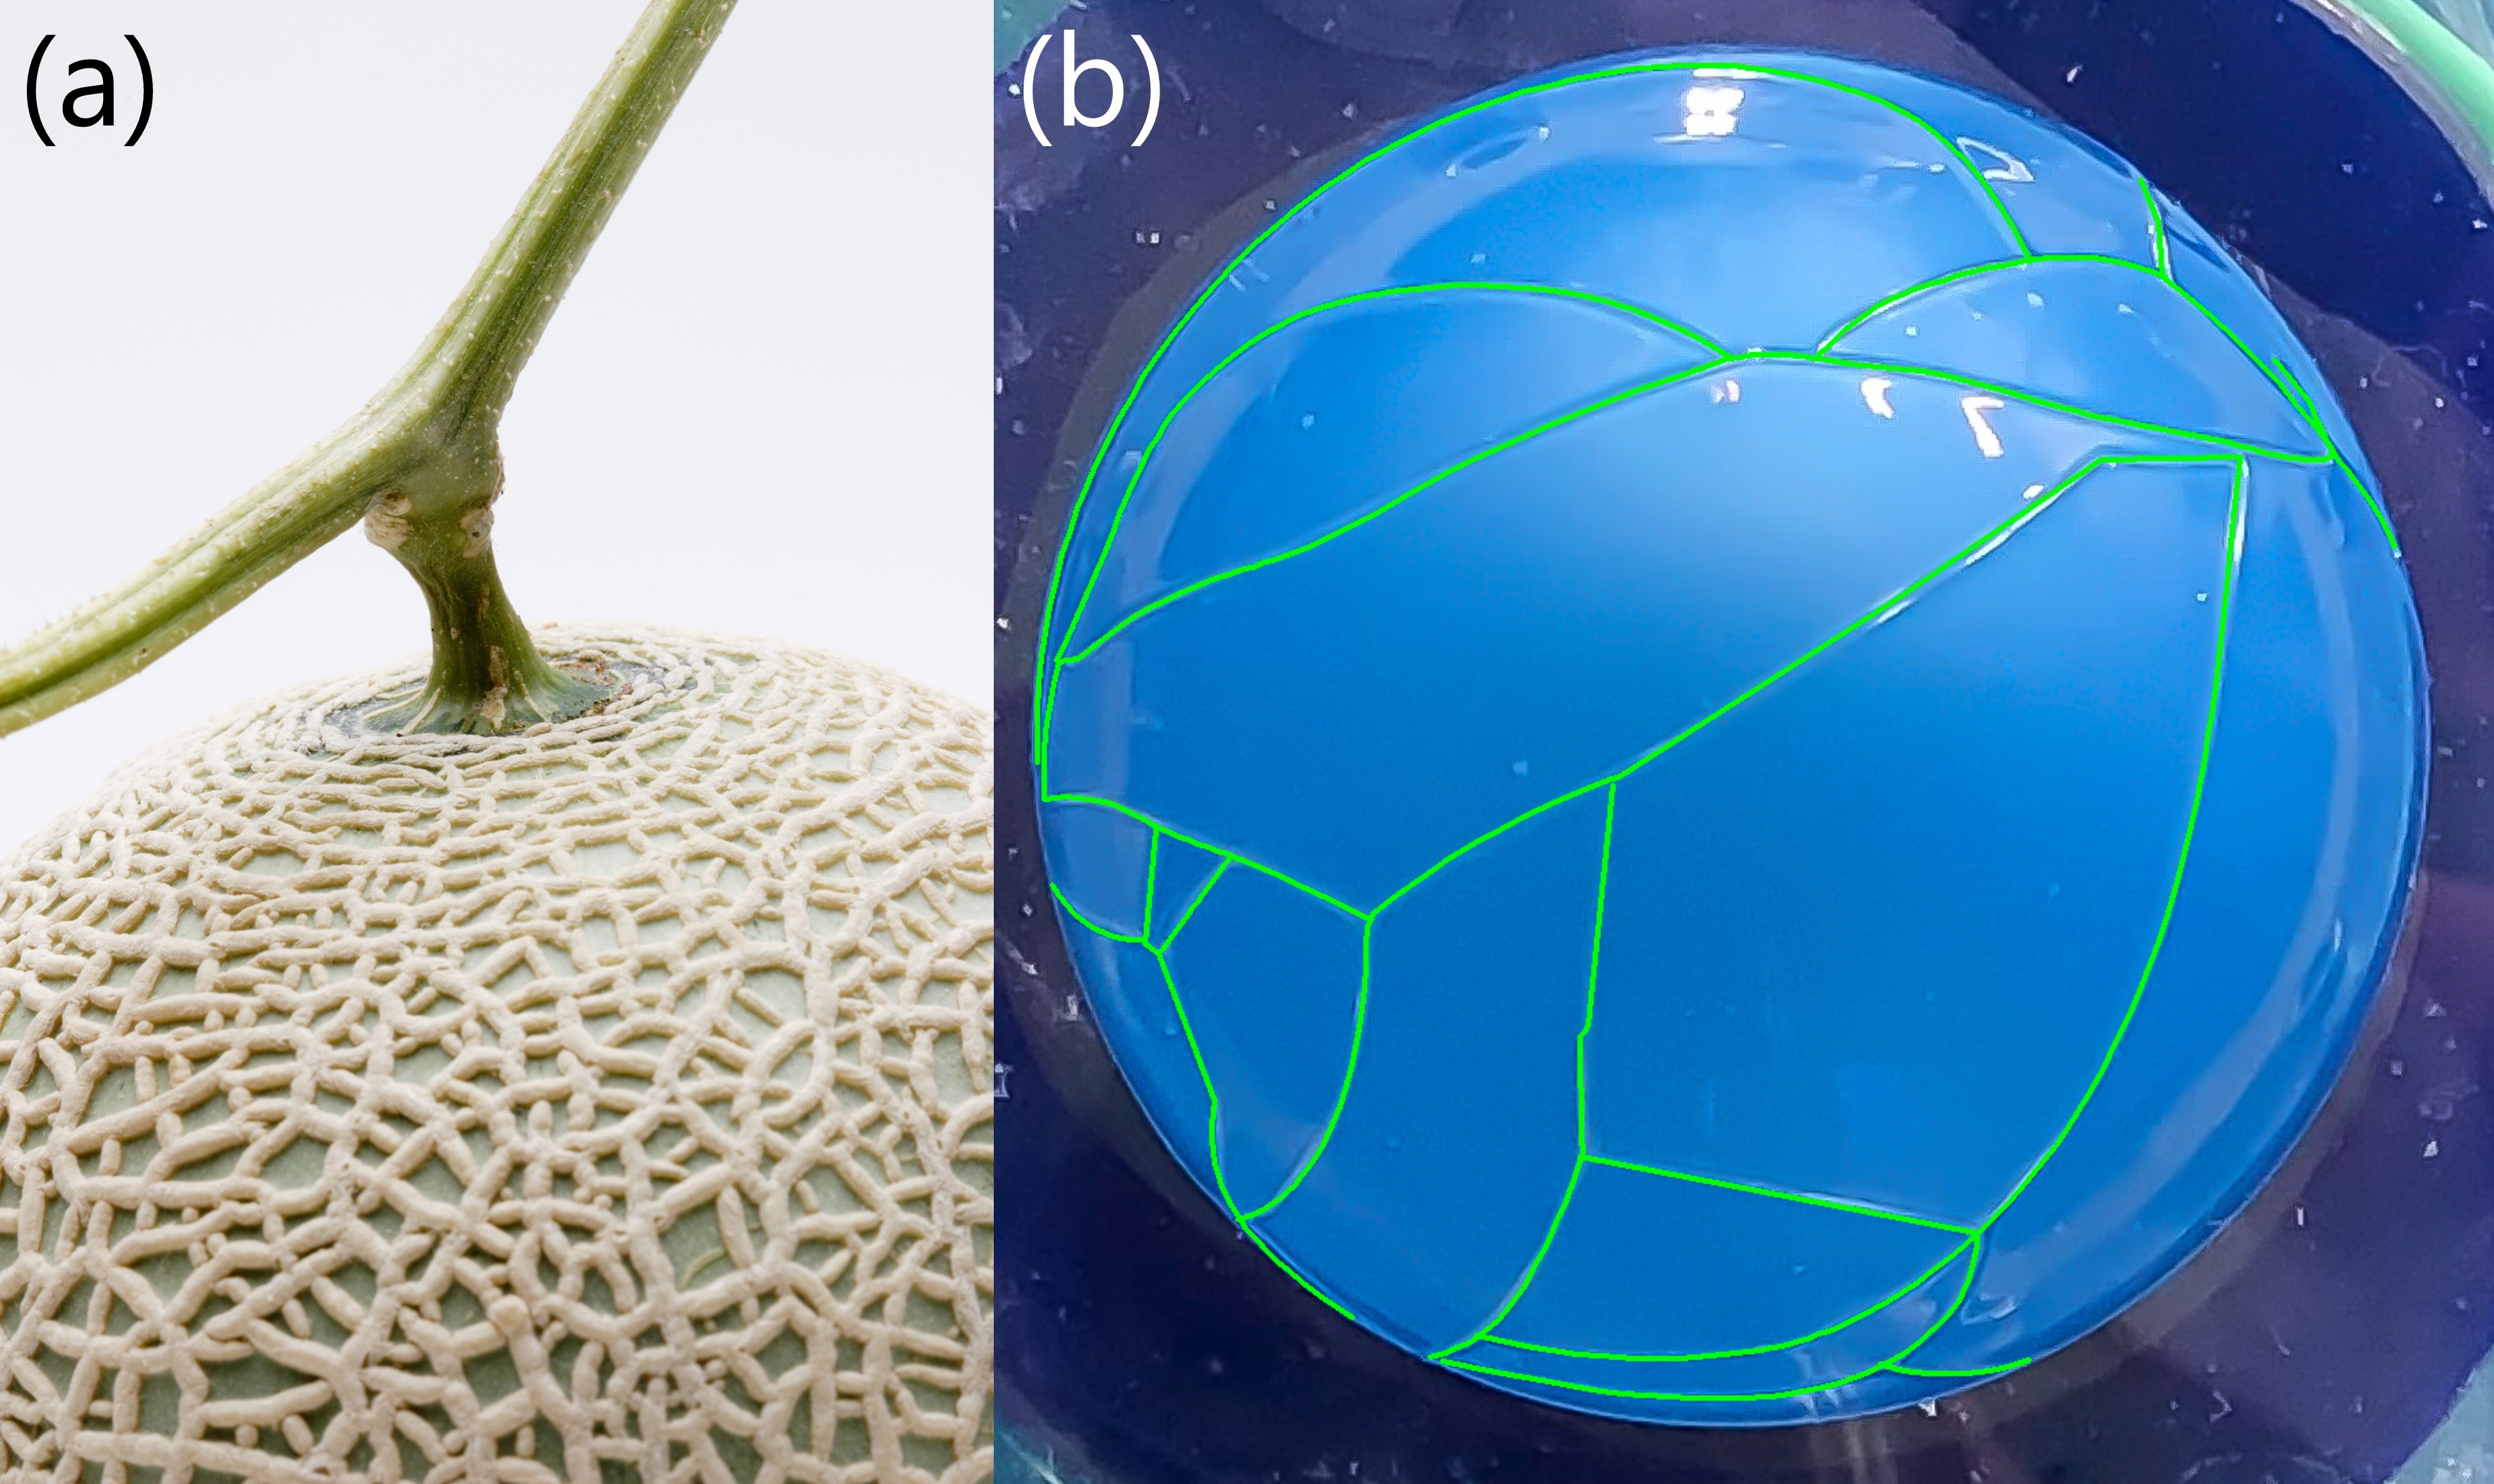 マスクメロンの網目模様がなぜできるのか知っていますか？実は果実の成長によって生じた表面の亀裂に内側から分泌液が染み出して固まったものだと言われています。この網目模様に着想を得て、薄いものにおいて亀裂がどのように進展するか研究しています。